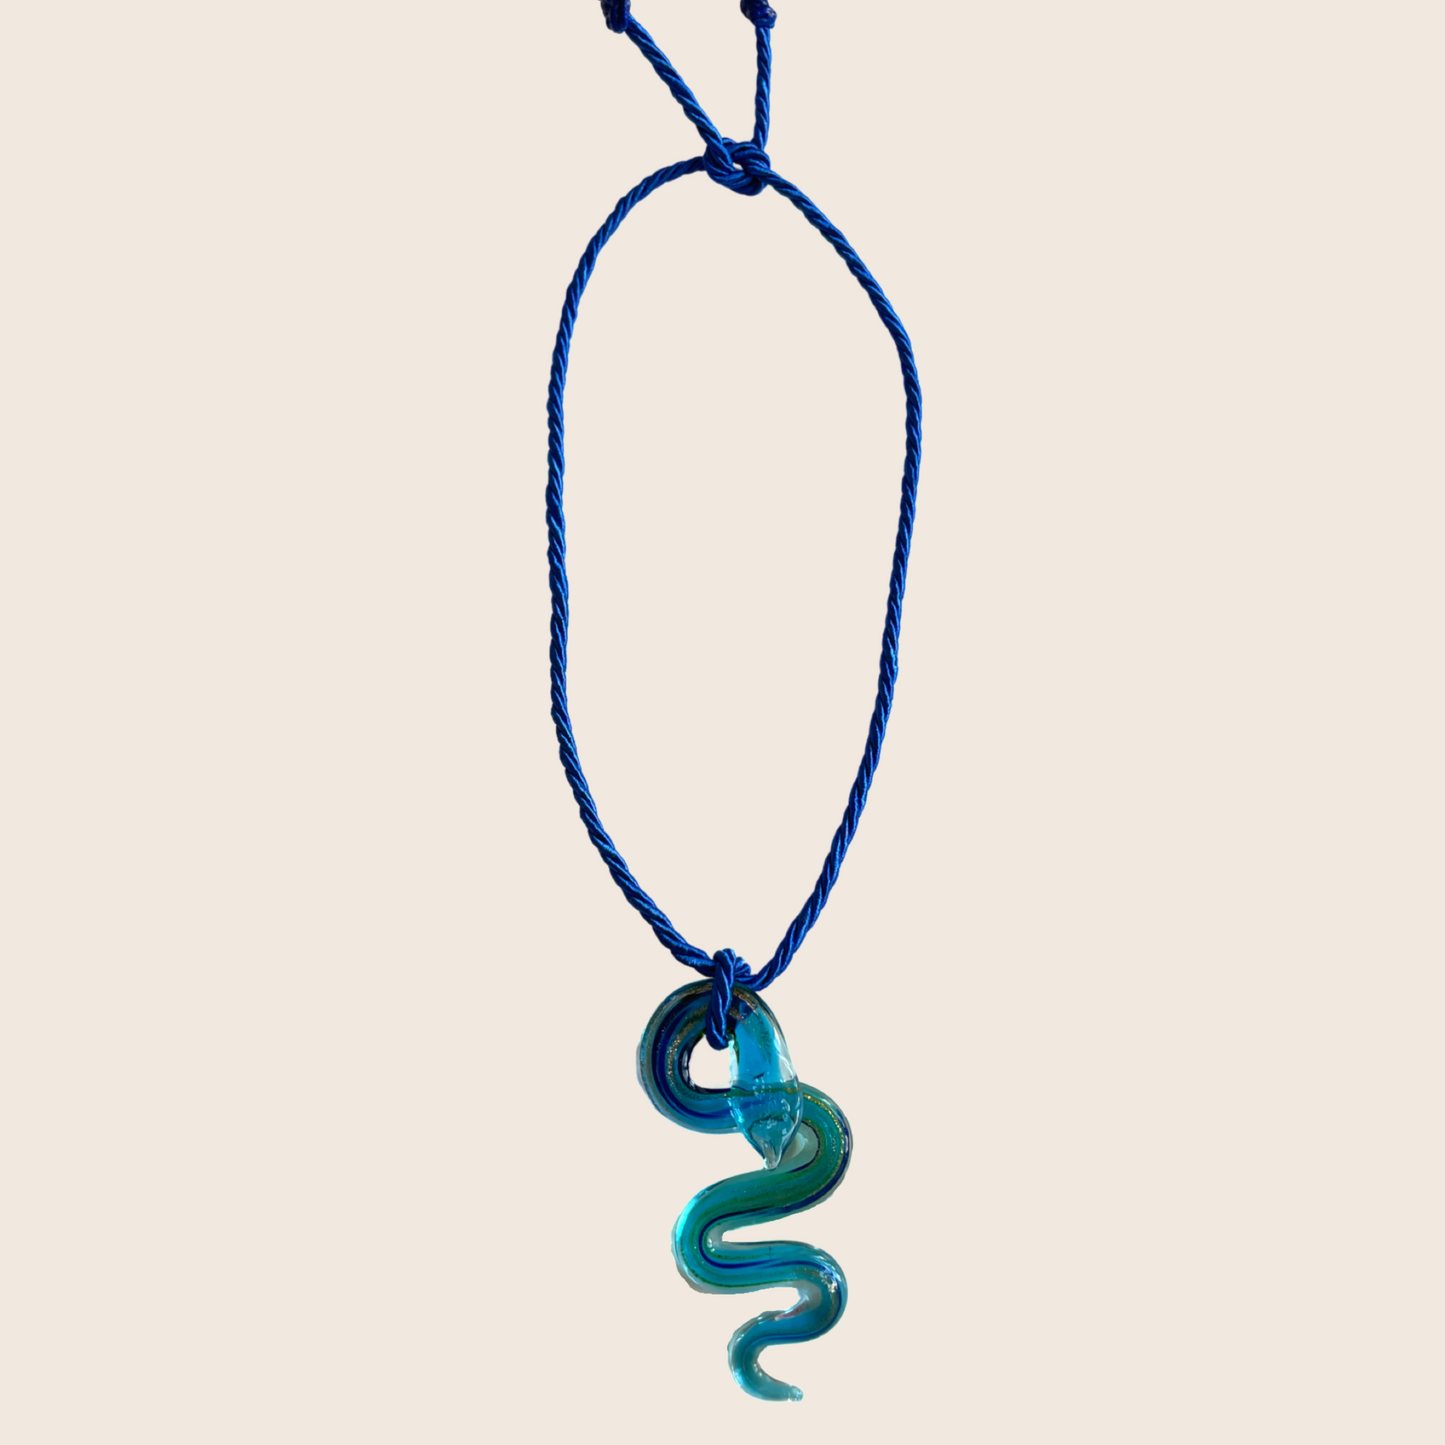 Glass Snake Necklace - Lemon Lua Glass Snake Necklace Lemon Lua Aqua / Blue Lemon Lua Glass Snake Necklace Glass Snake Necklace